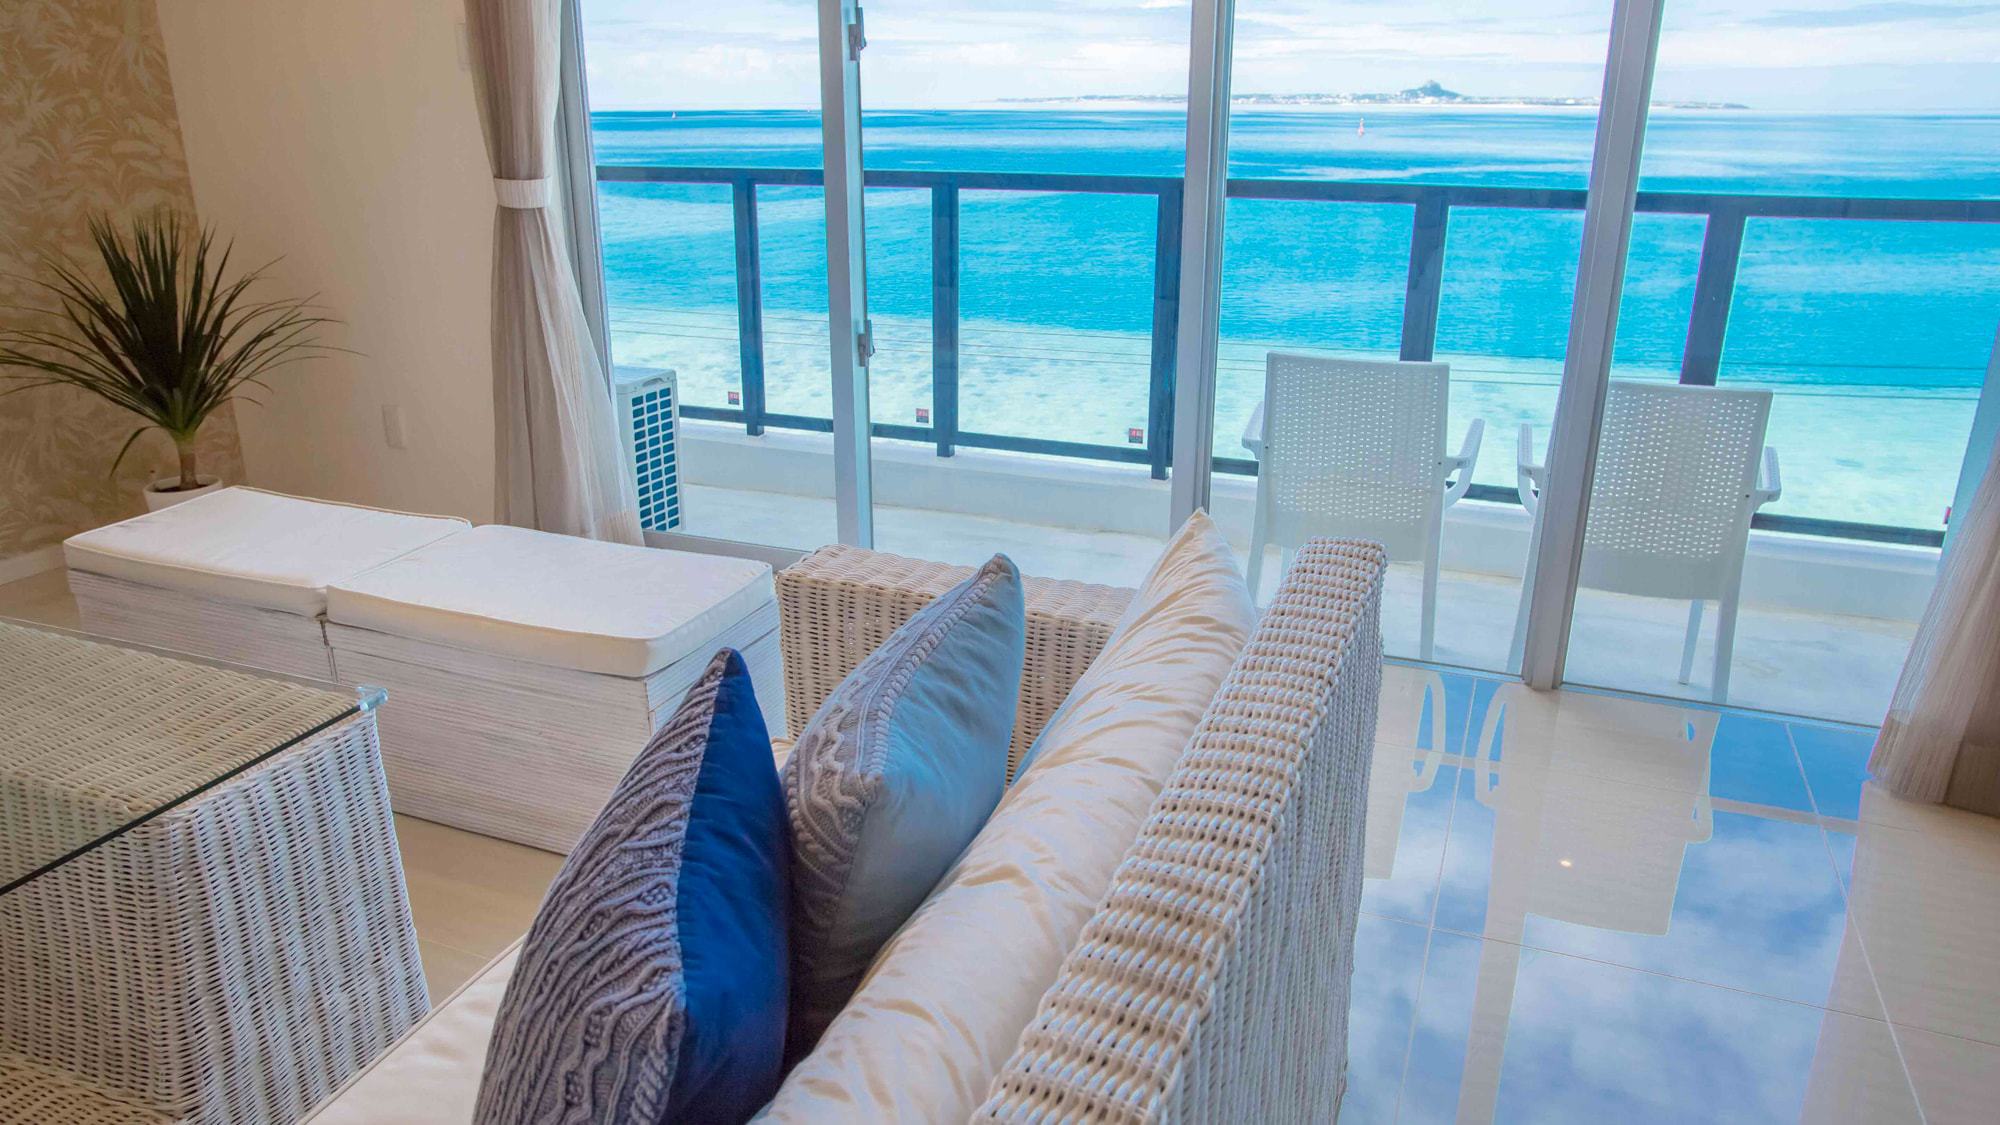 【客室スイート】エメラルドグリーンの海を眺めながらソファで過ごす贅沢なひと時